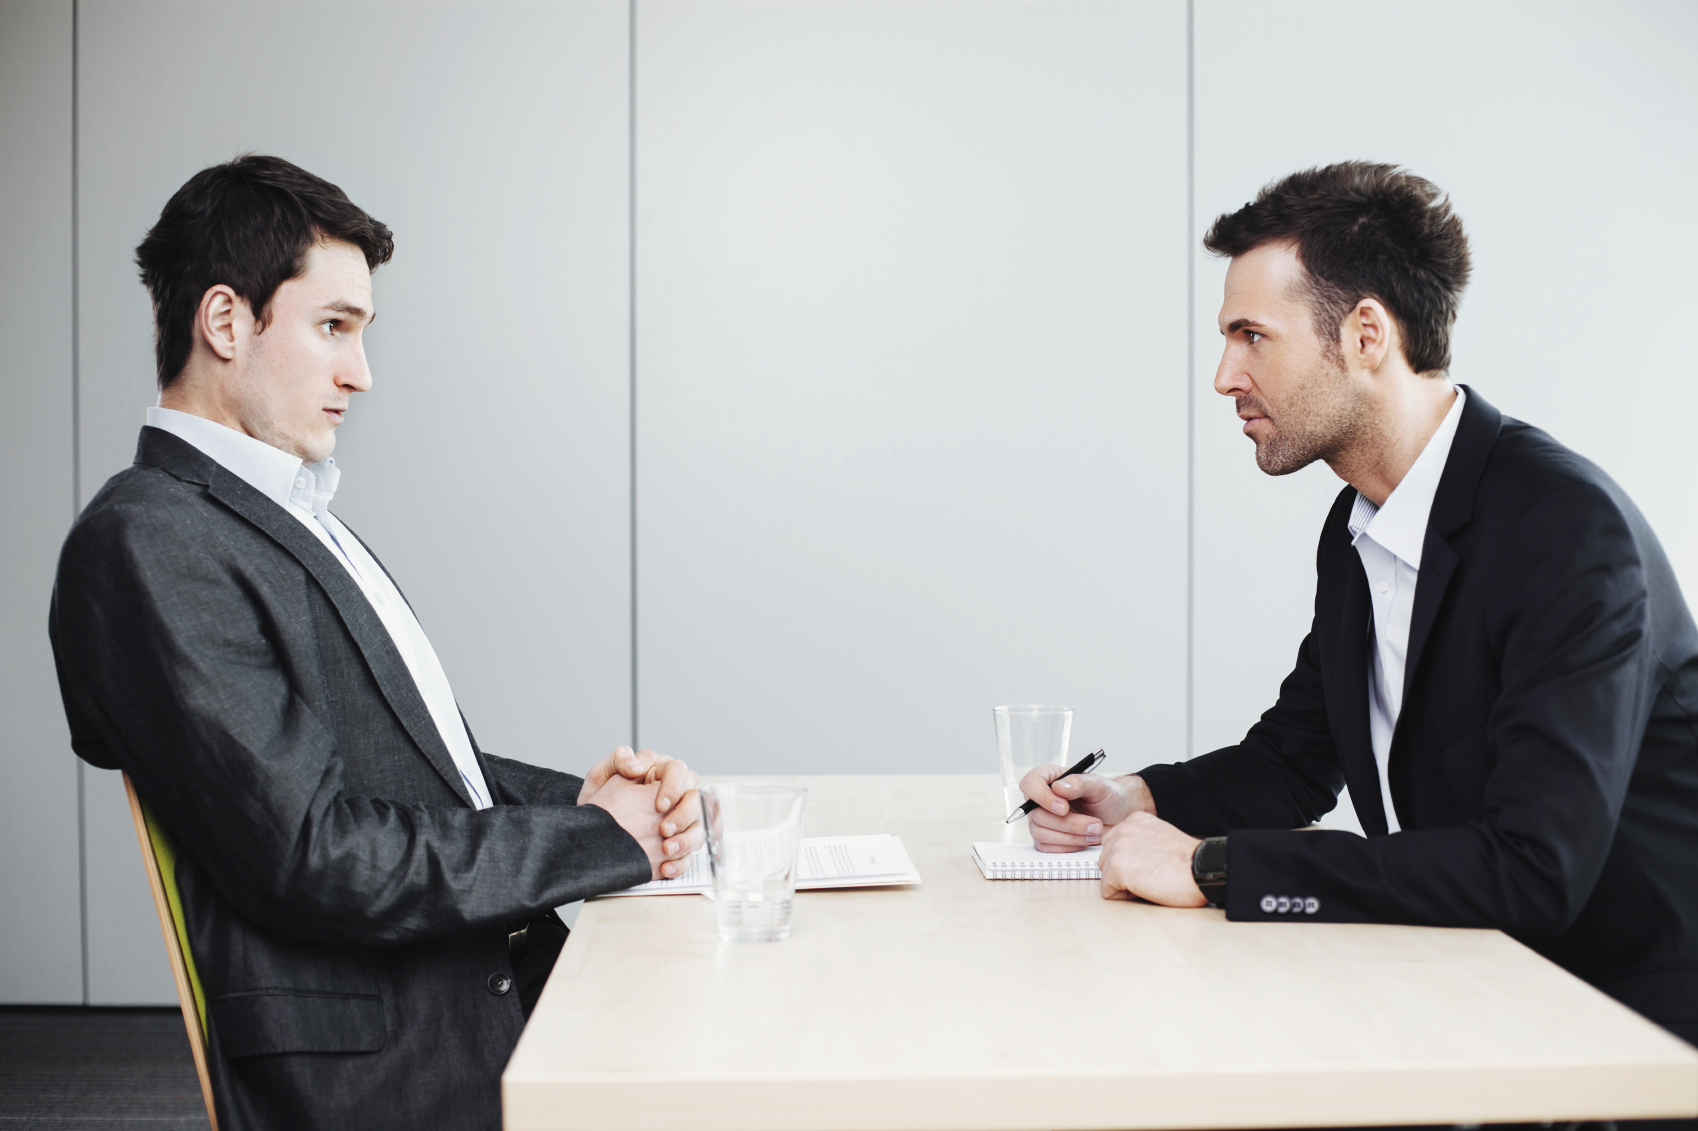 Mature job interview